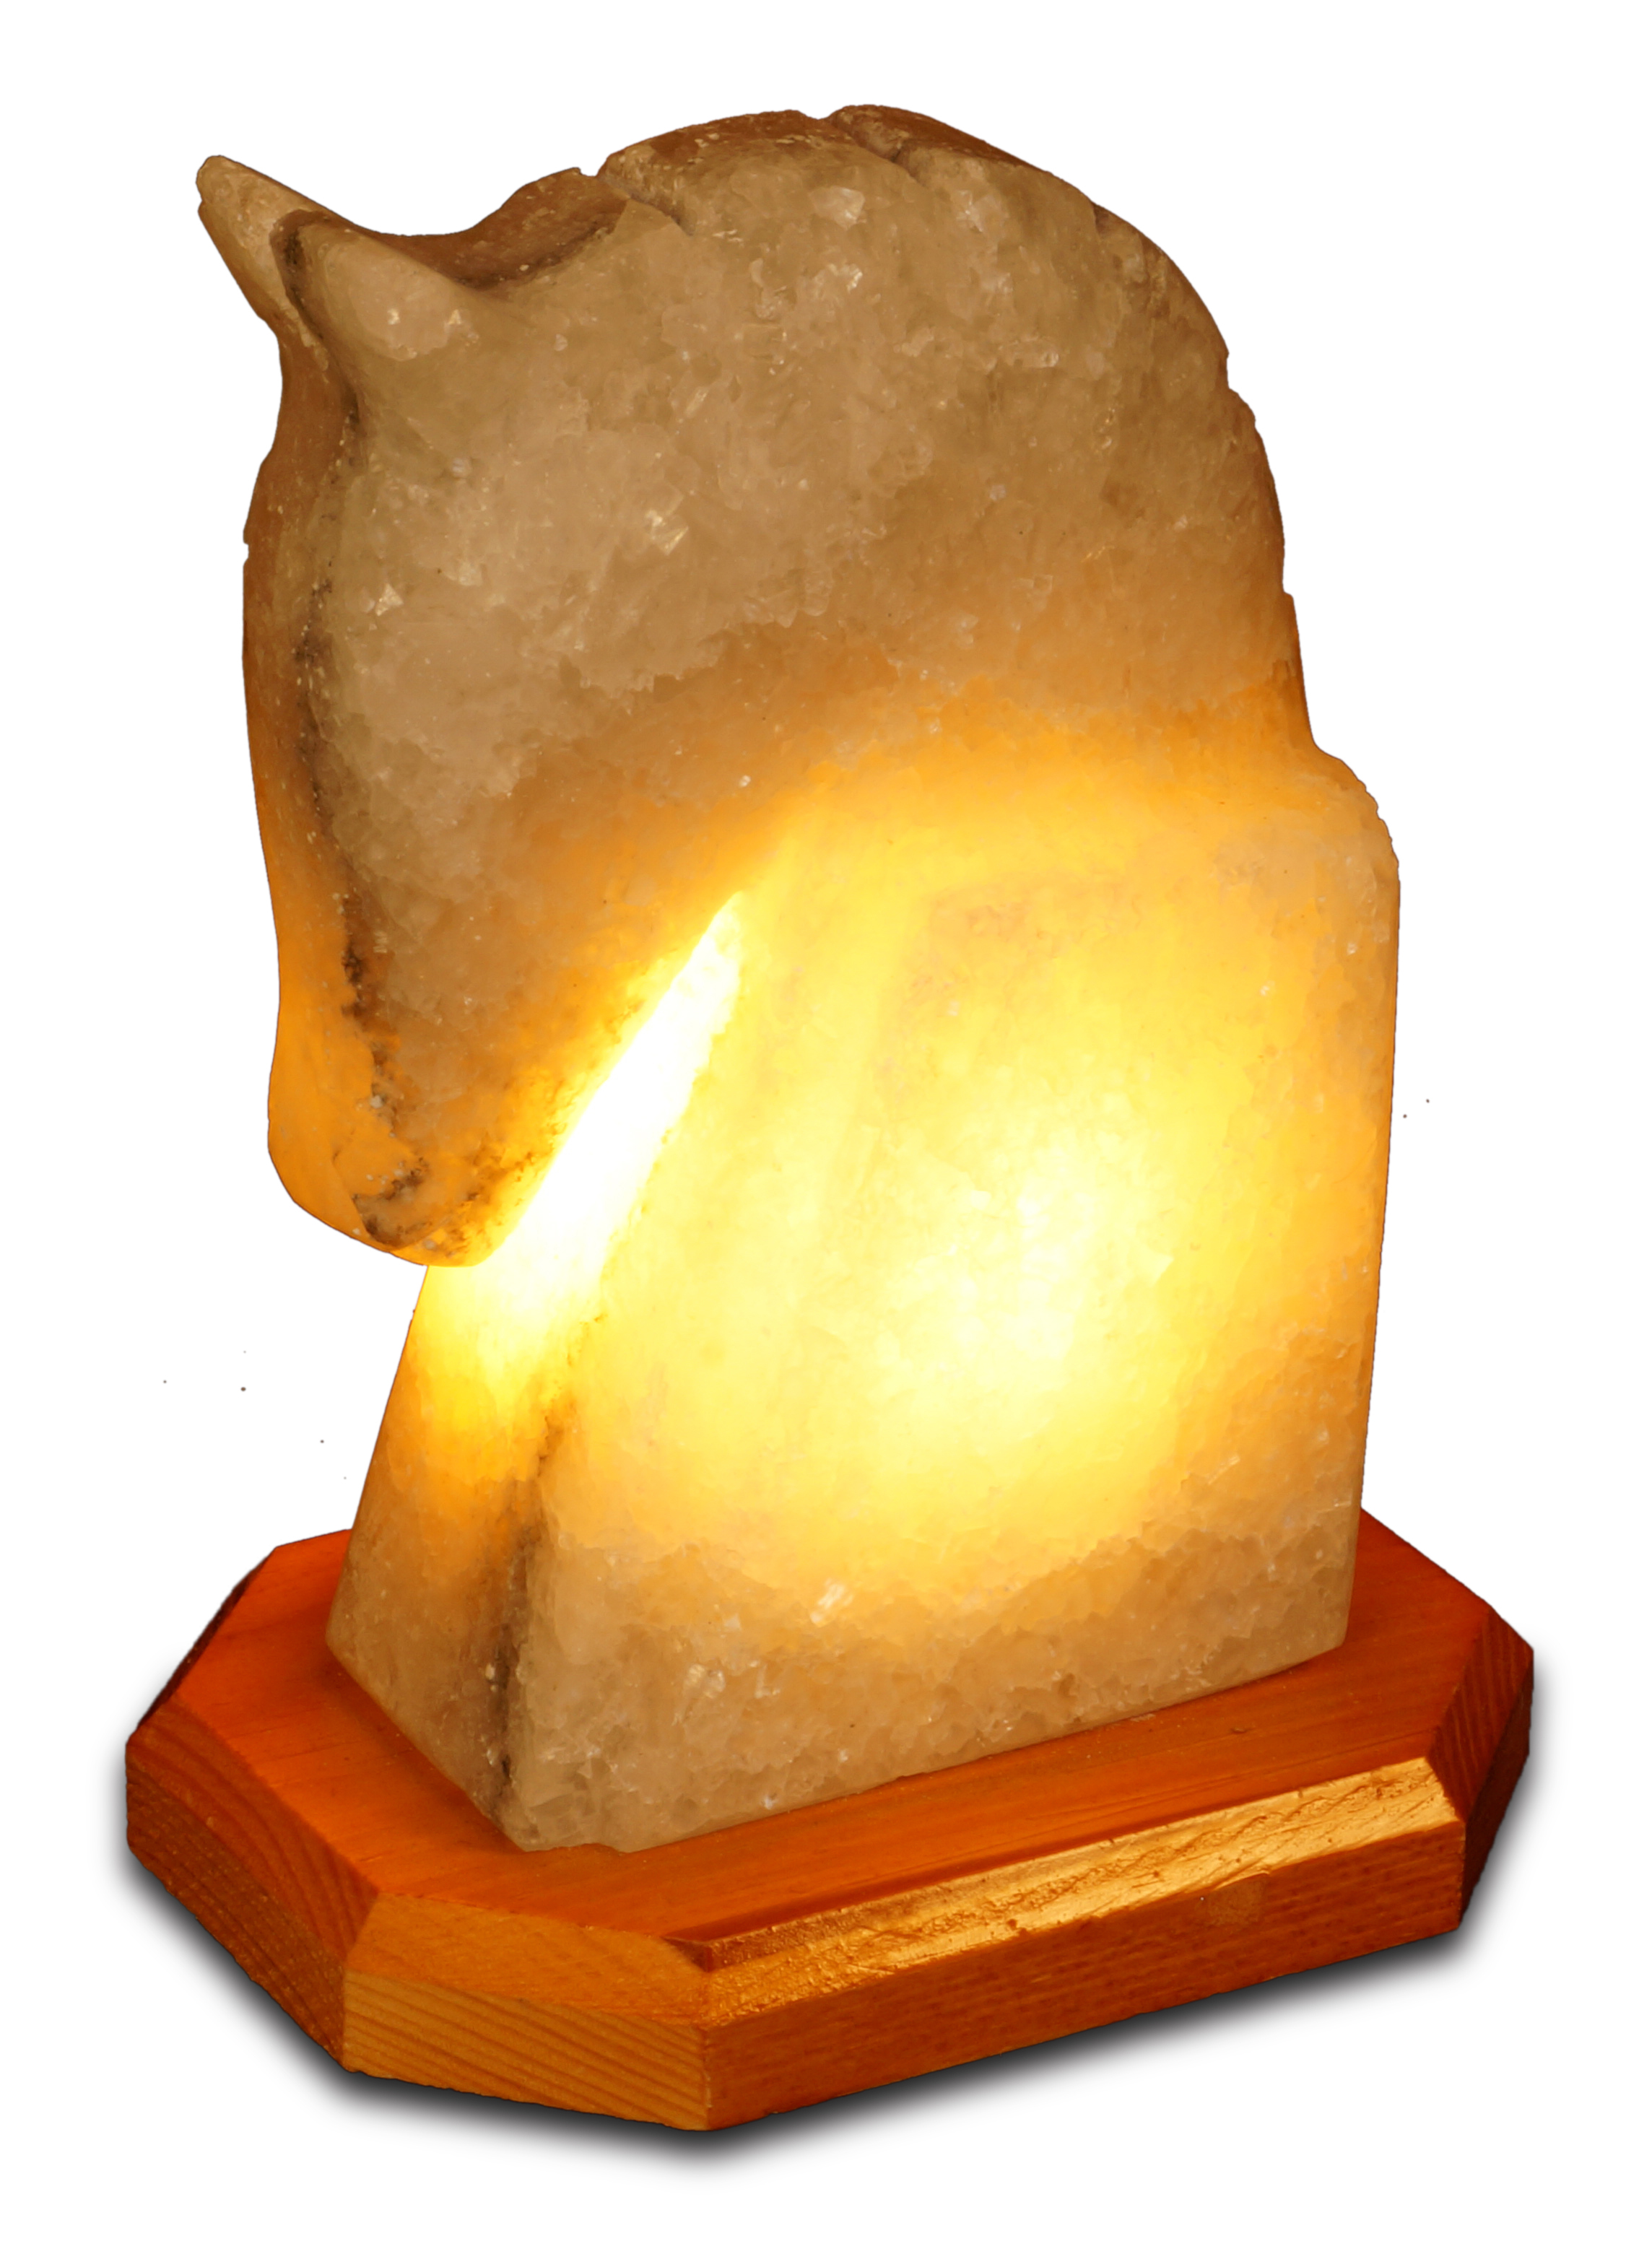 kaya tuzu lambası